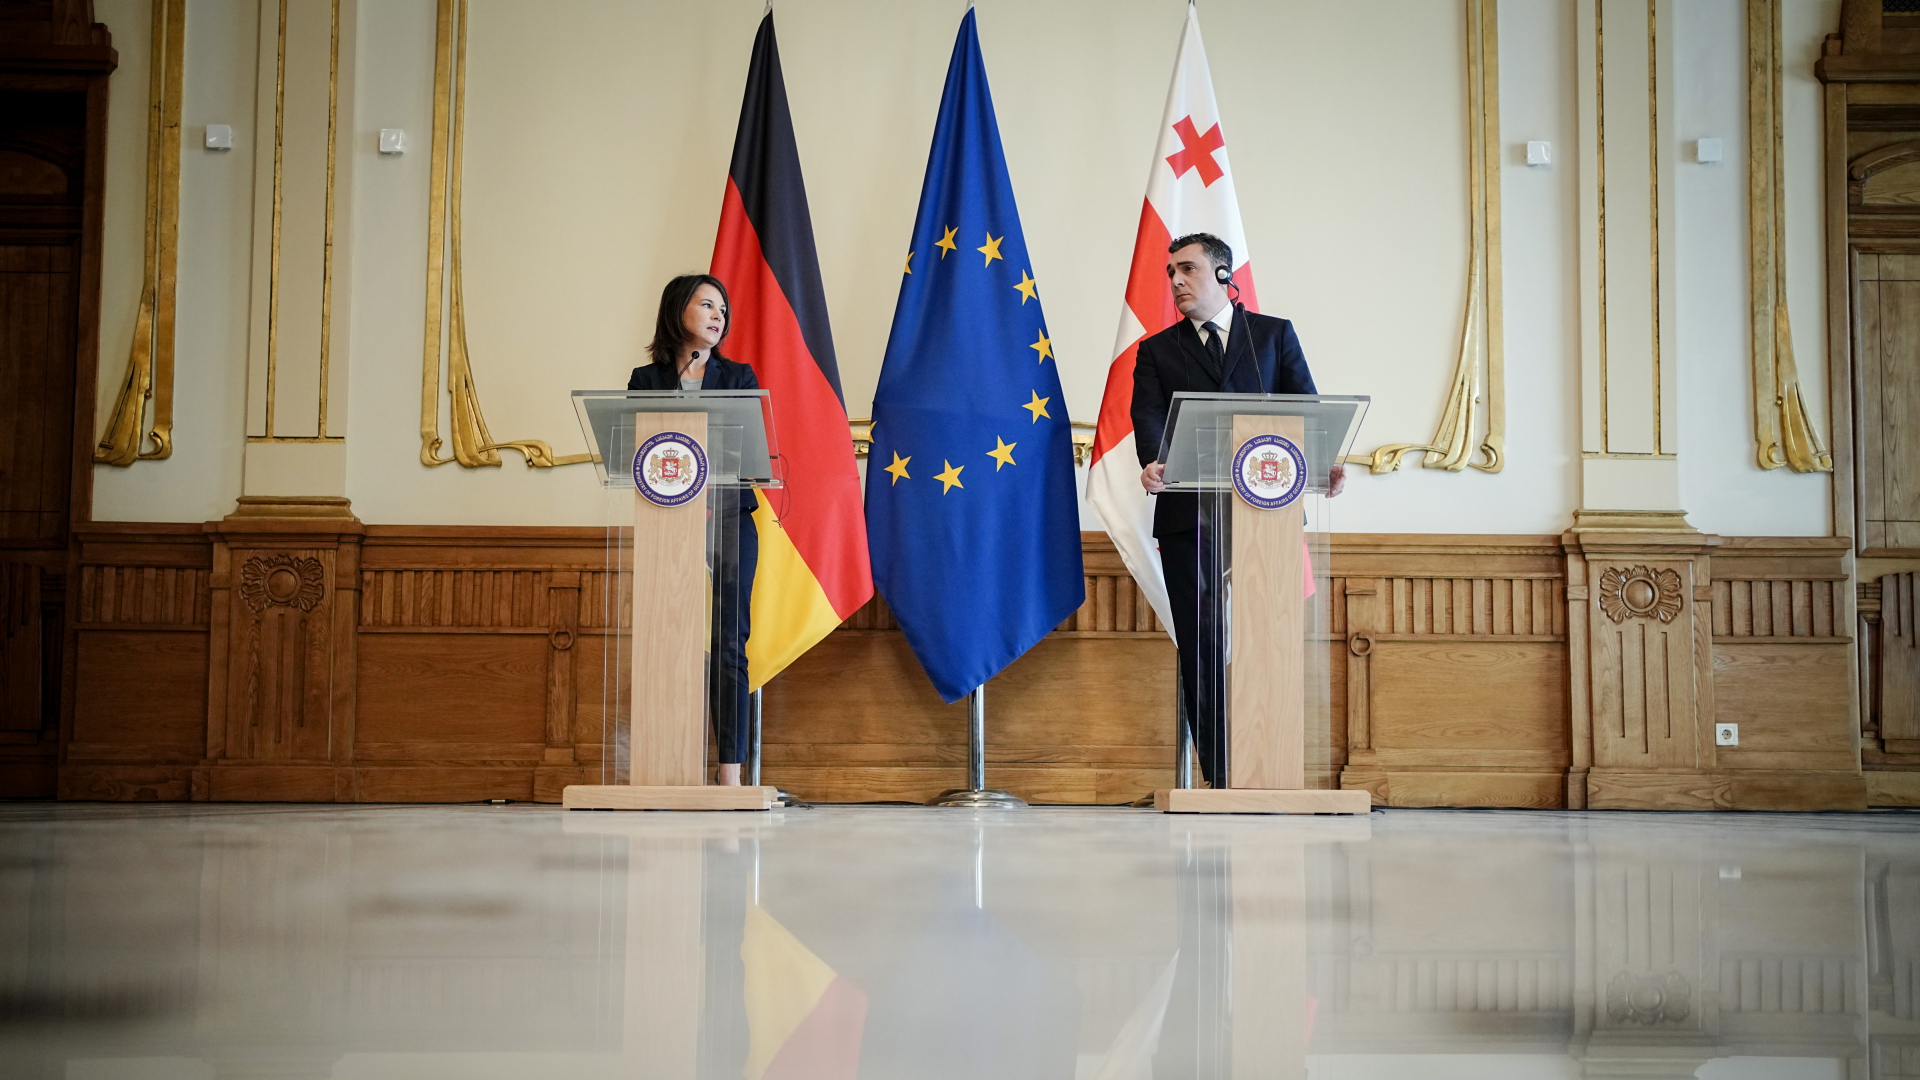 Annalena Baerbock und Ilia Darchiashvili, Außenminister von Georgien, geben eine Pressekonferenz.  | dpa